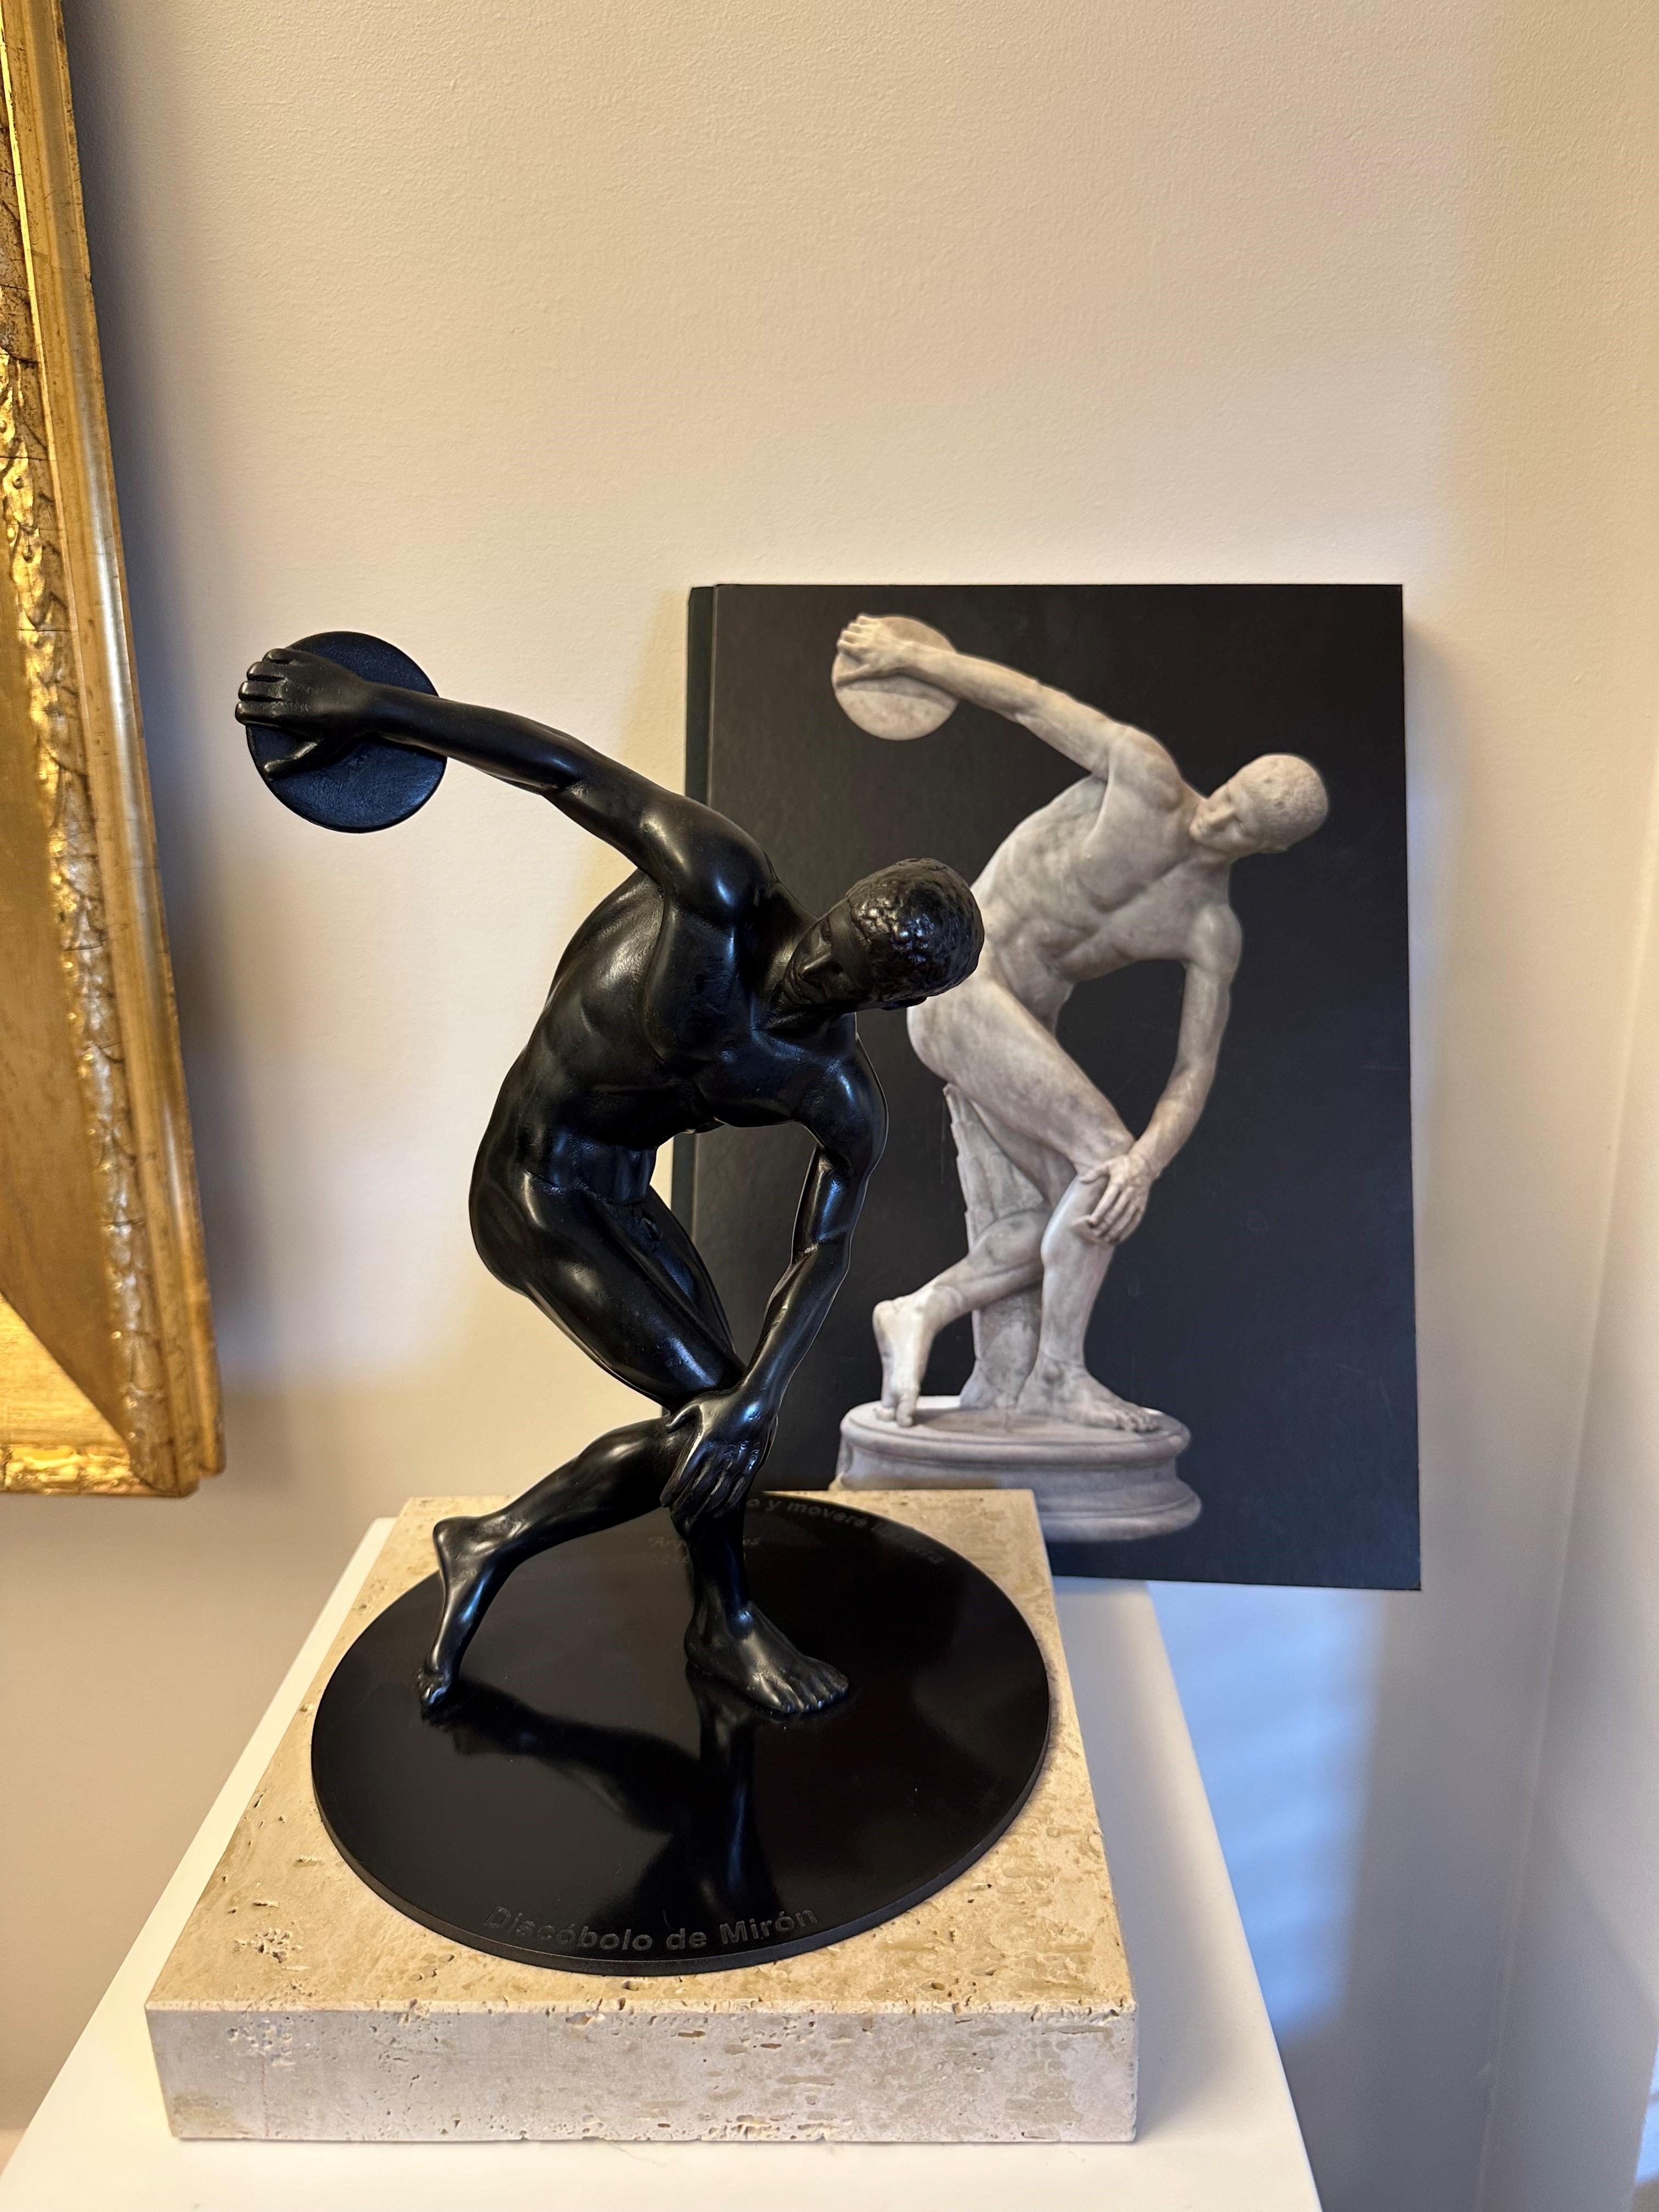 
Eine Skulptur, die von der Lancellotti-Version inspiriert ist und nach einem sorgfältigen handwerklichen Verfahren hergestellt wurde. Das notariell beglaubigte Zertifikat, das dem Stück beiliegt, wird von Skel Art in limitierter Auflage